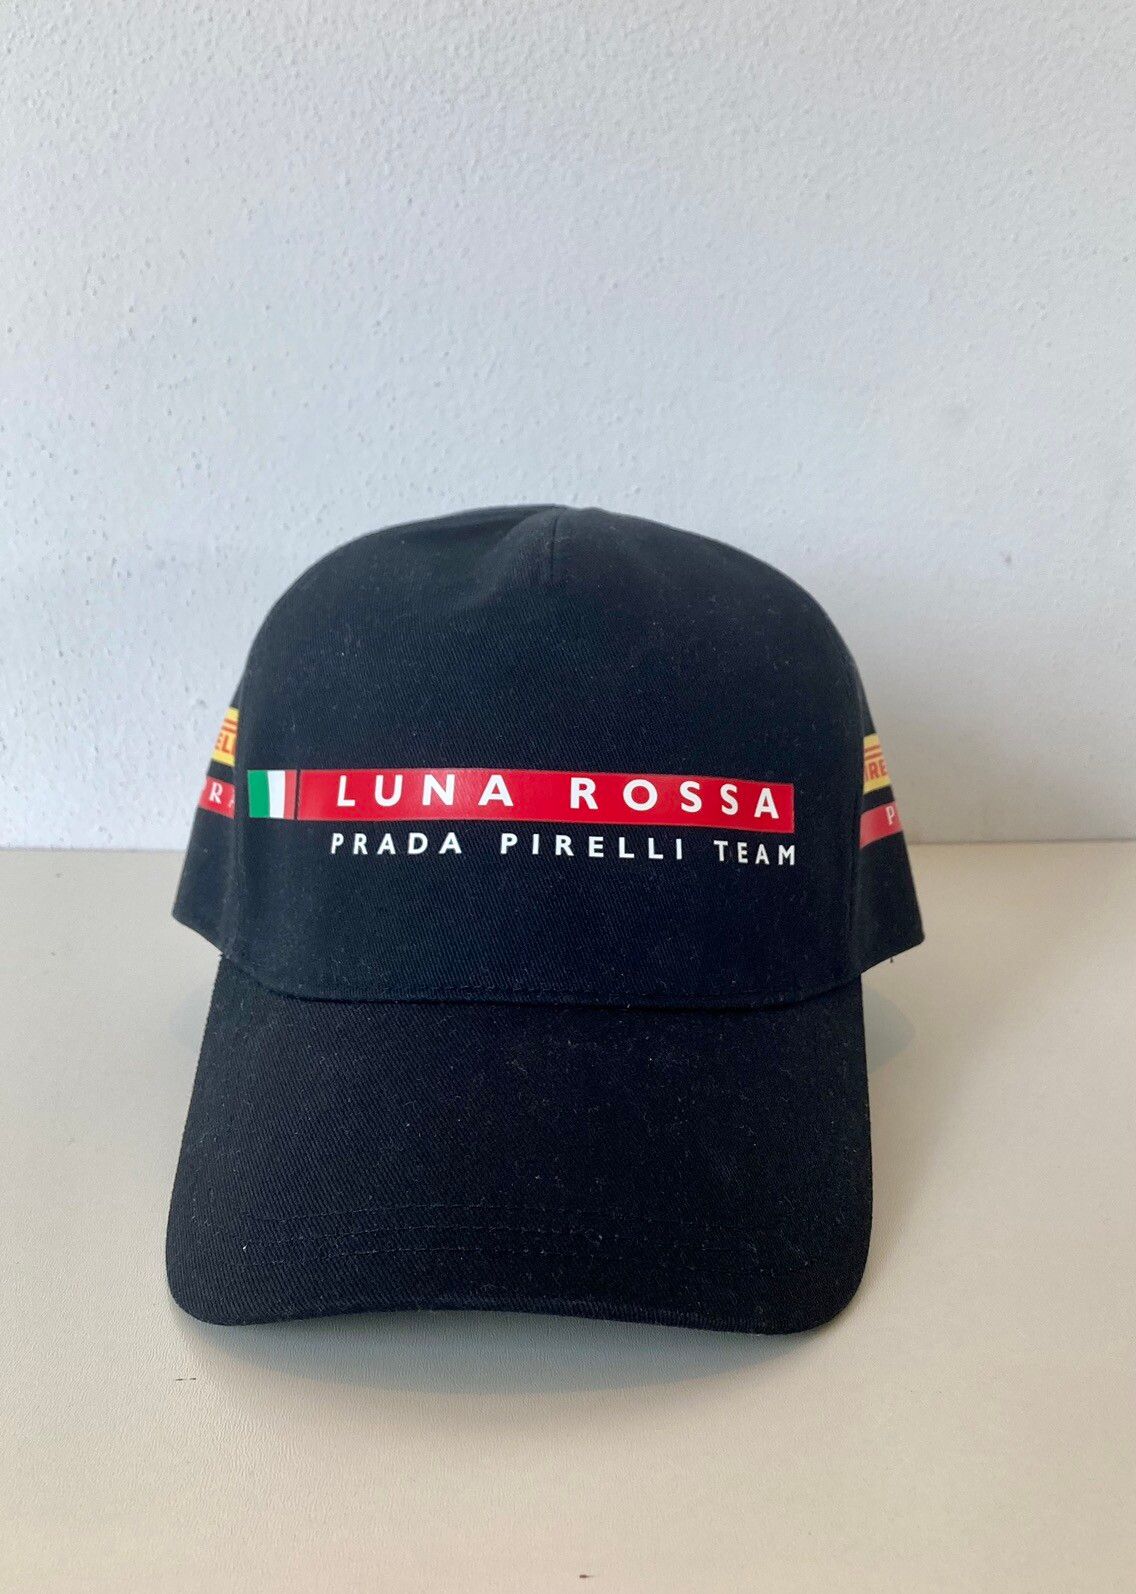 Prada Luna Rossa Cap | Grailed